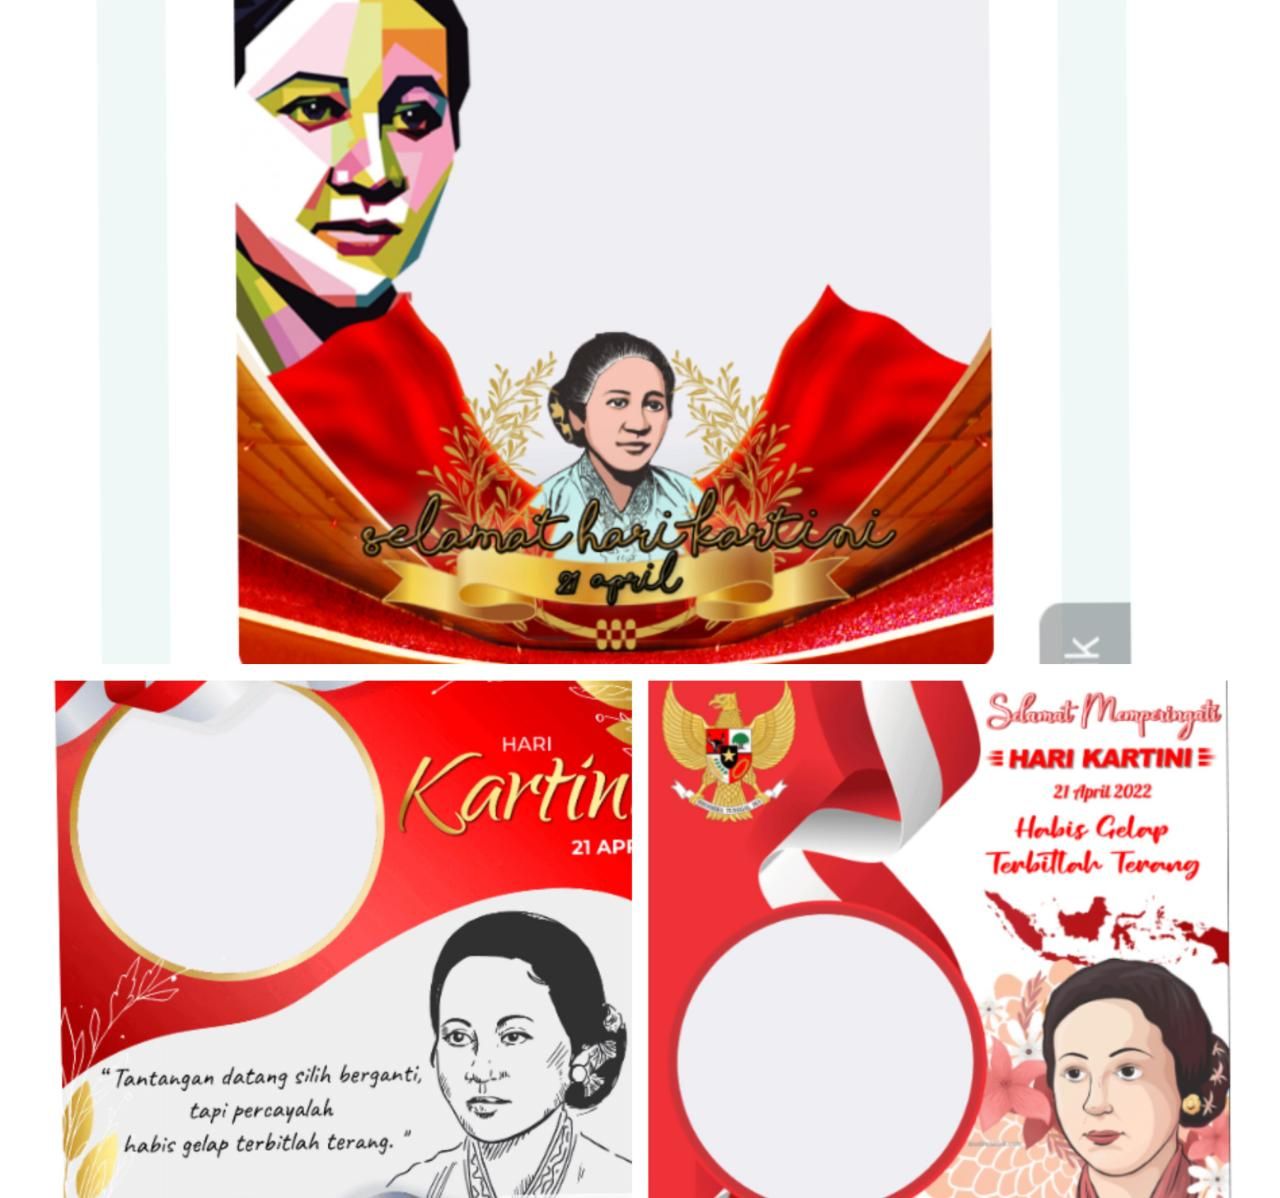 TERKINI! 10 Link Twibbon Hari Kartini 2022 yang Terbaru dan Terlaris, Cocok Dibagikan ke Media Sosial 